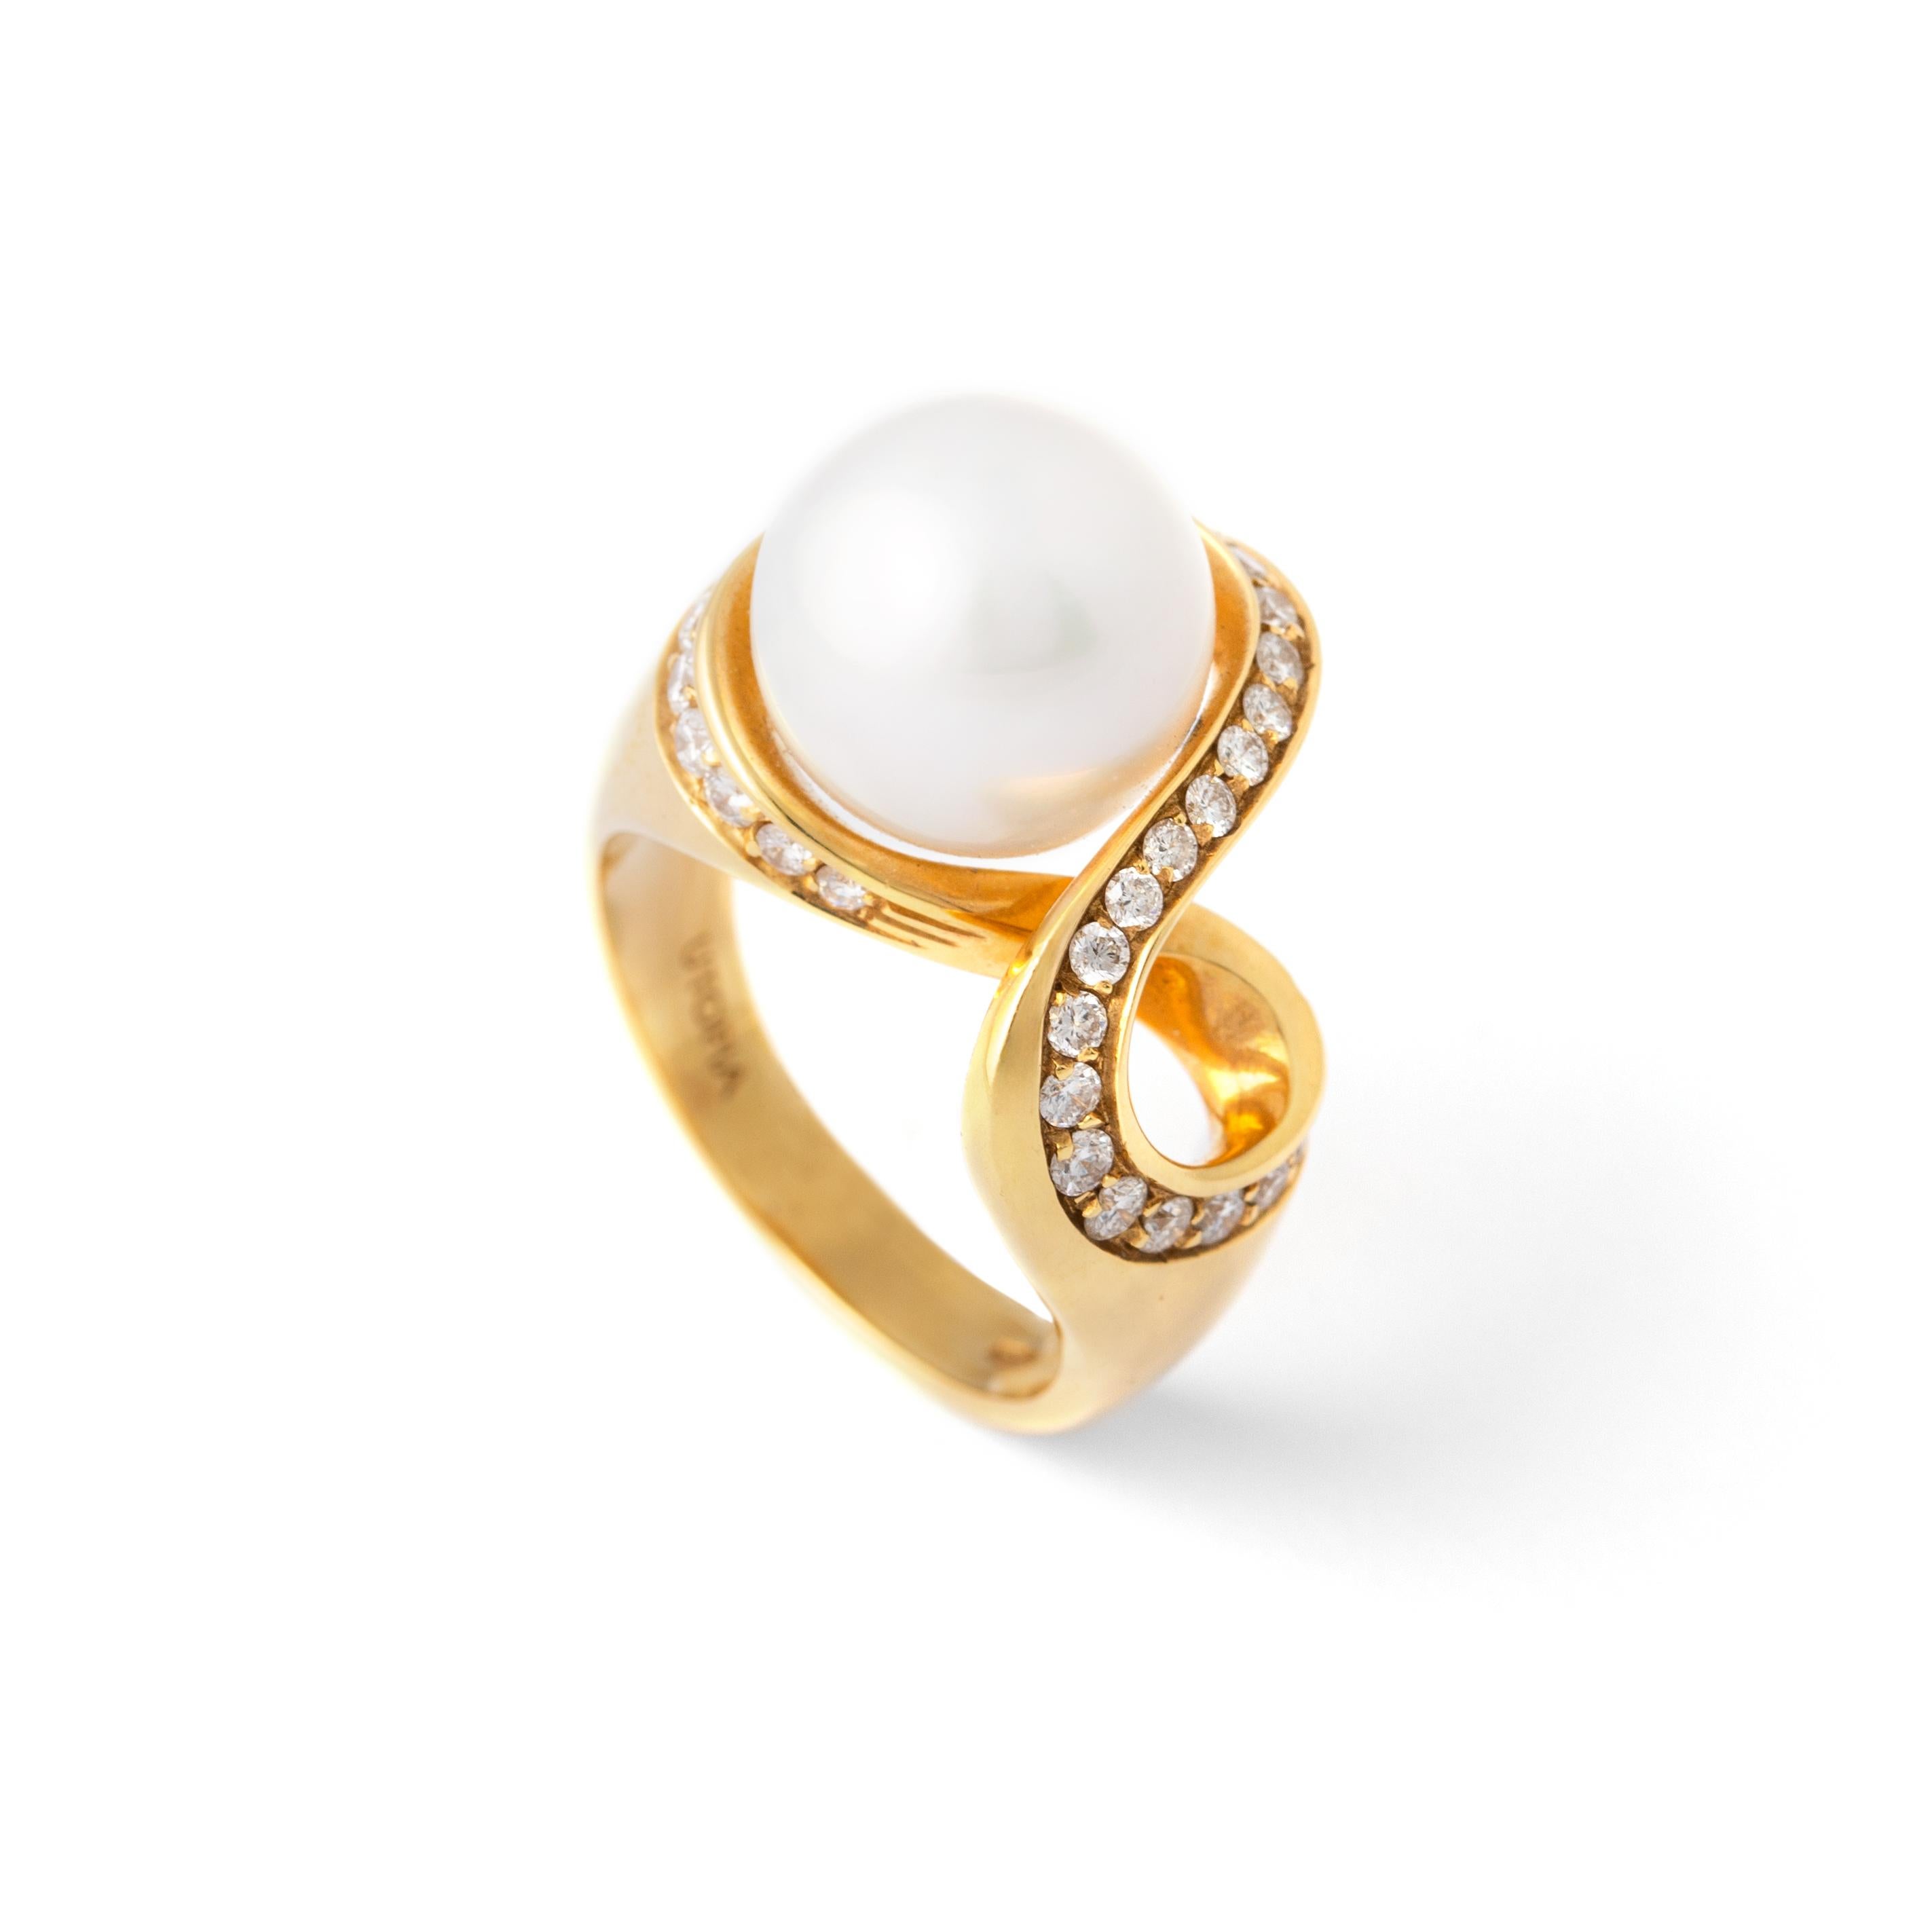 Perle Diamant Gelbgold 18K Ring.
Zentrale Perle 11,35 Karat und Diamant geschätzt 0,75 Karat H Farbe und Vs Klarheit.
Gesamtgewicht: 13,51 Gramm.
Größe: 7,5 
